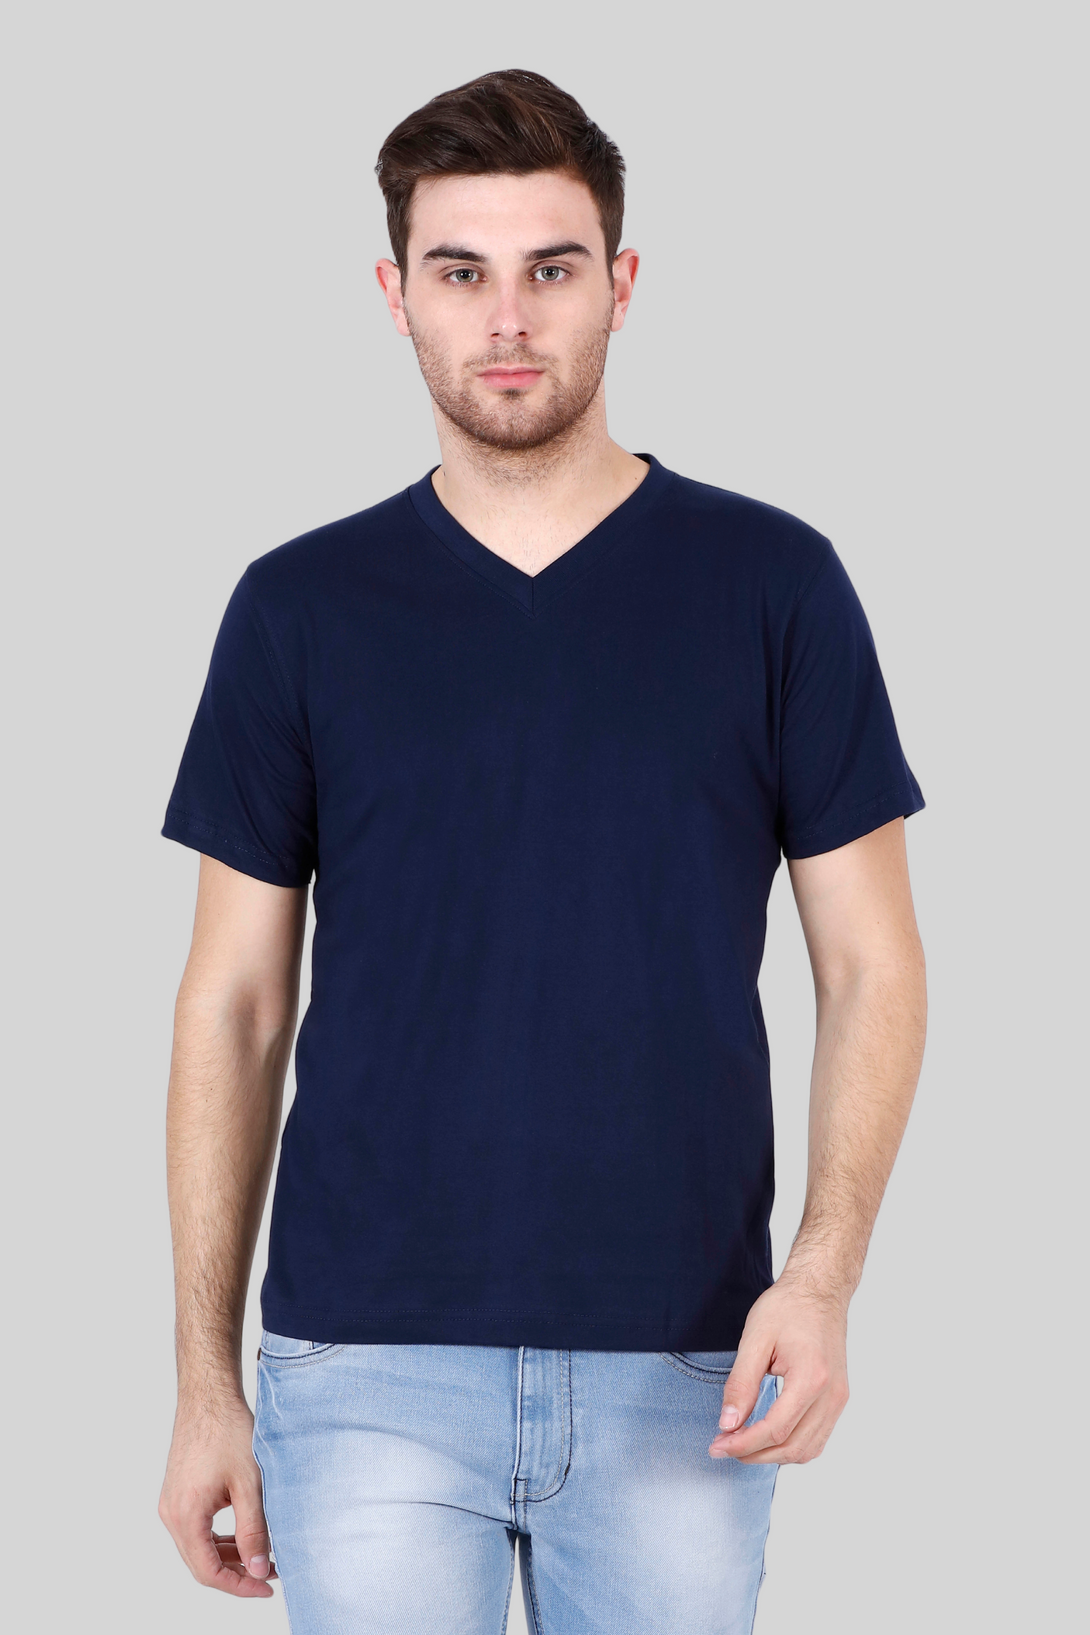 Navy Blue V Neck T-Shirt For Men - WowWaves - 8